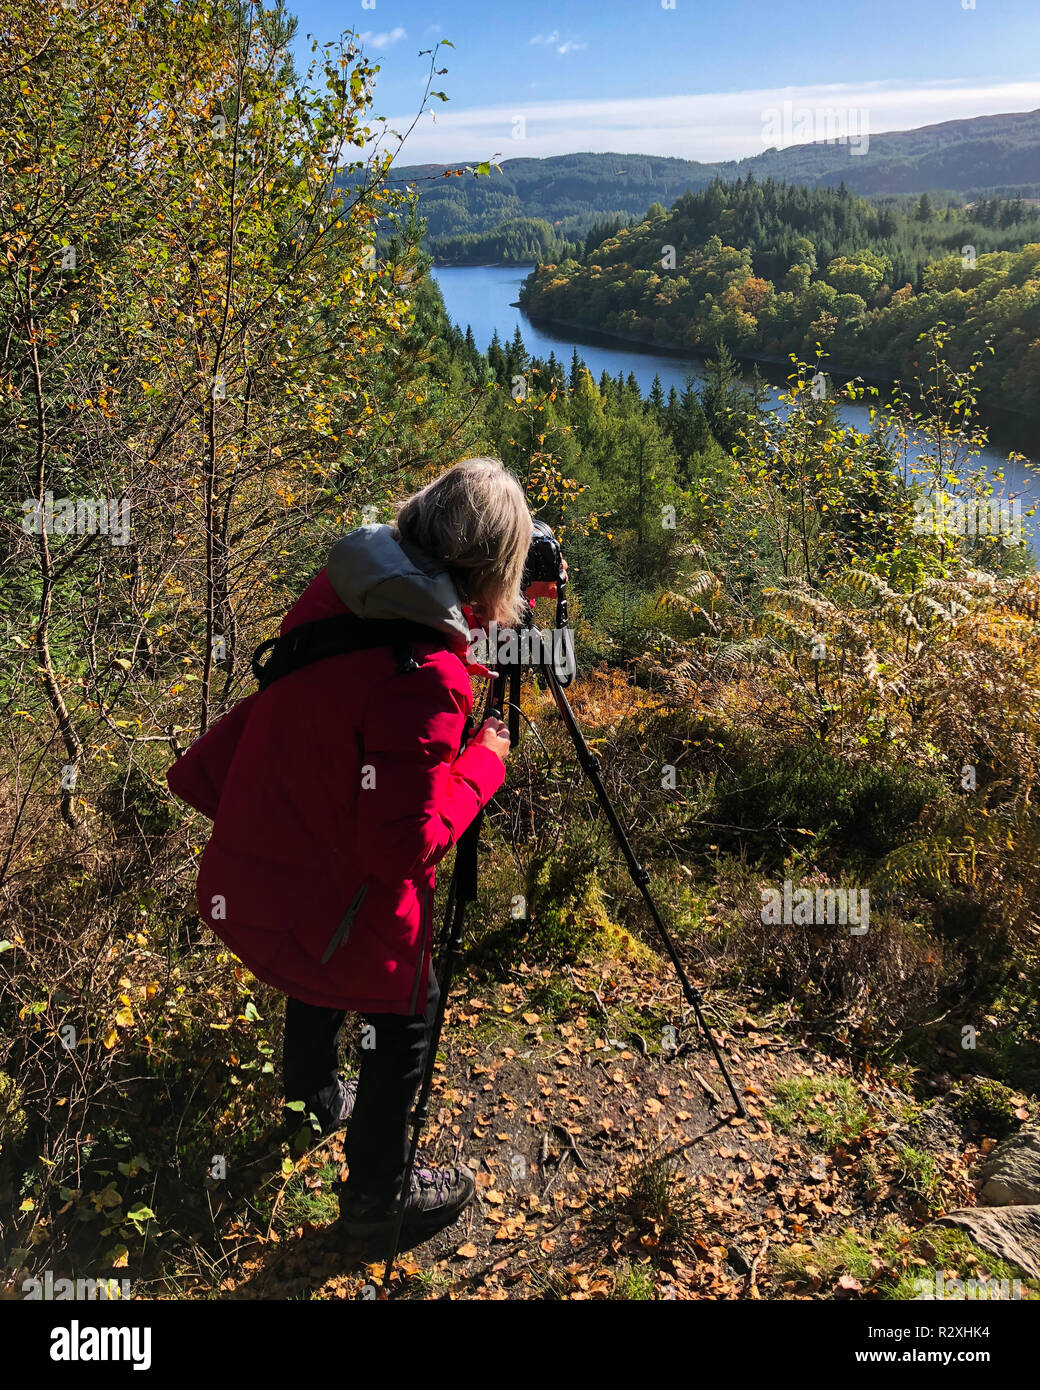 Fotografo femmina impostazione della fotocamera su treppiede per scattare una fotografia di paesaggio scozzese, Trossachs, Scotland Regno Unito Foto Stock